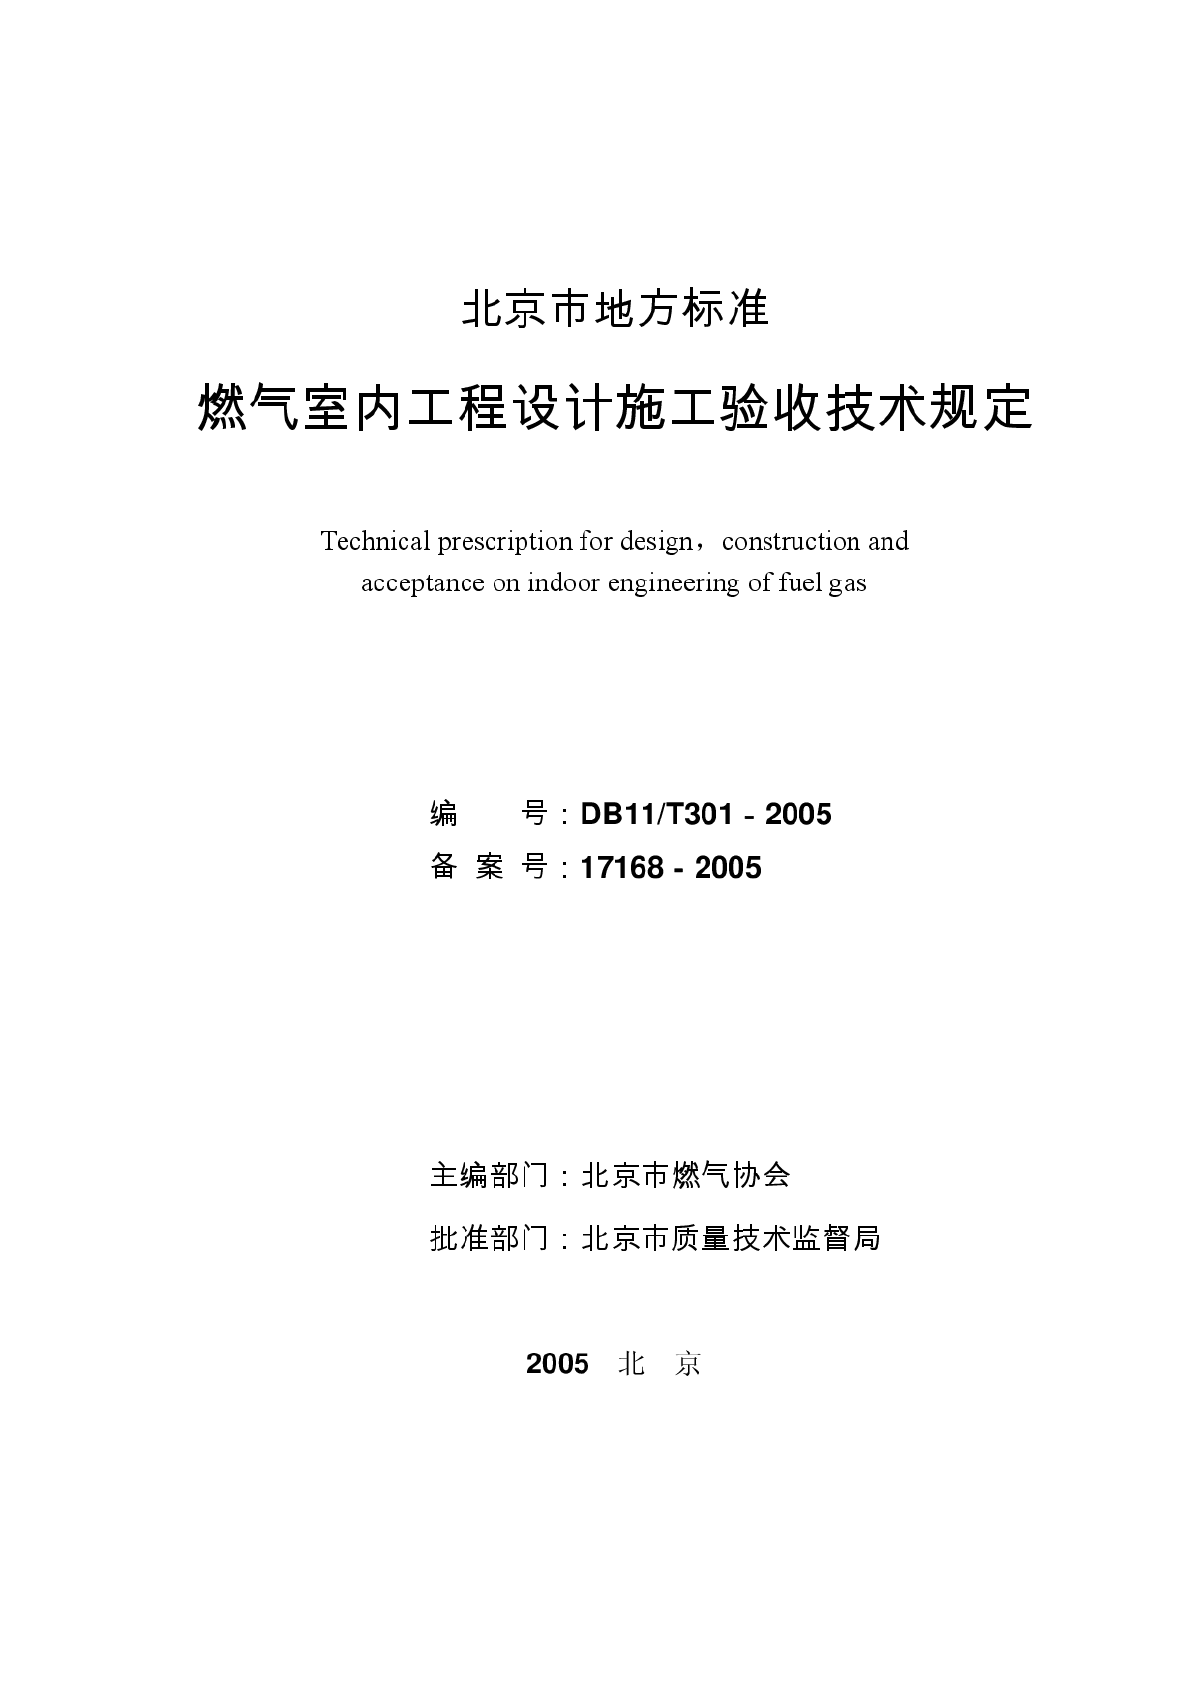 北京市地方标准《燃气室内工程设计施工验收技术规定》DB11/T301-2005-图二